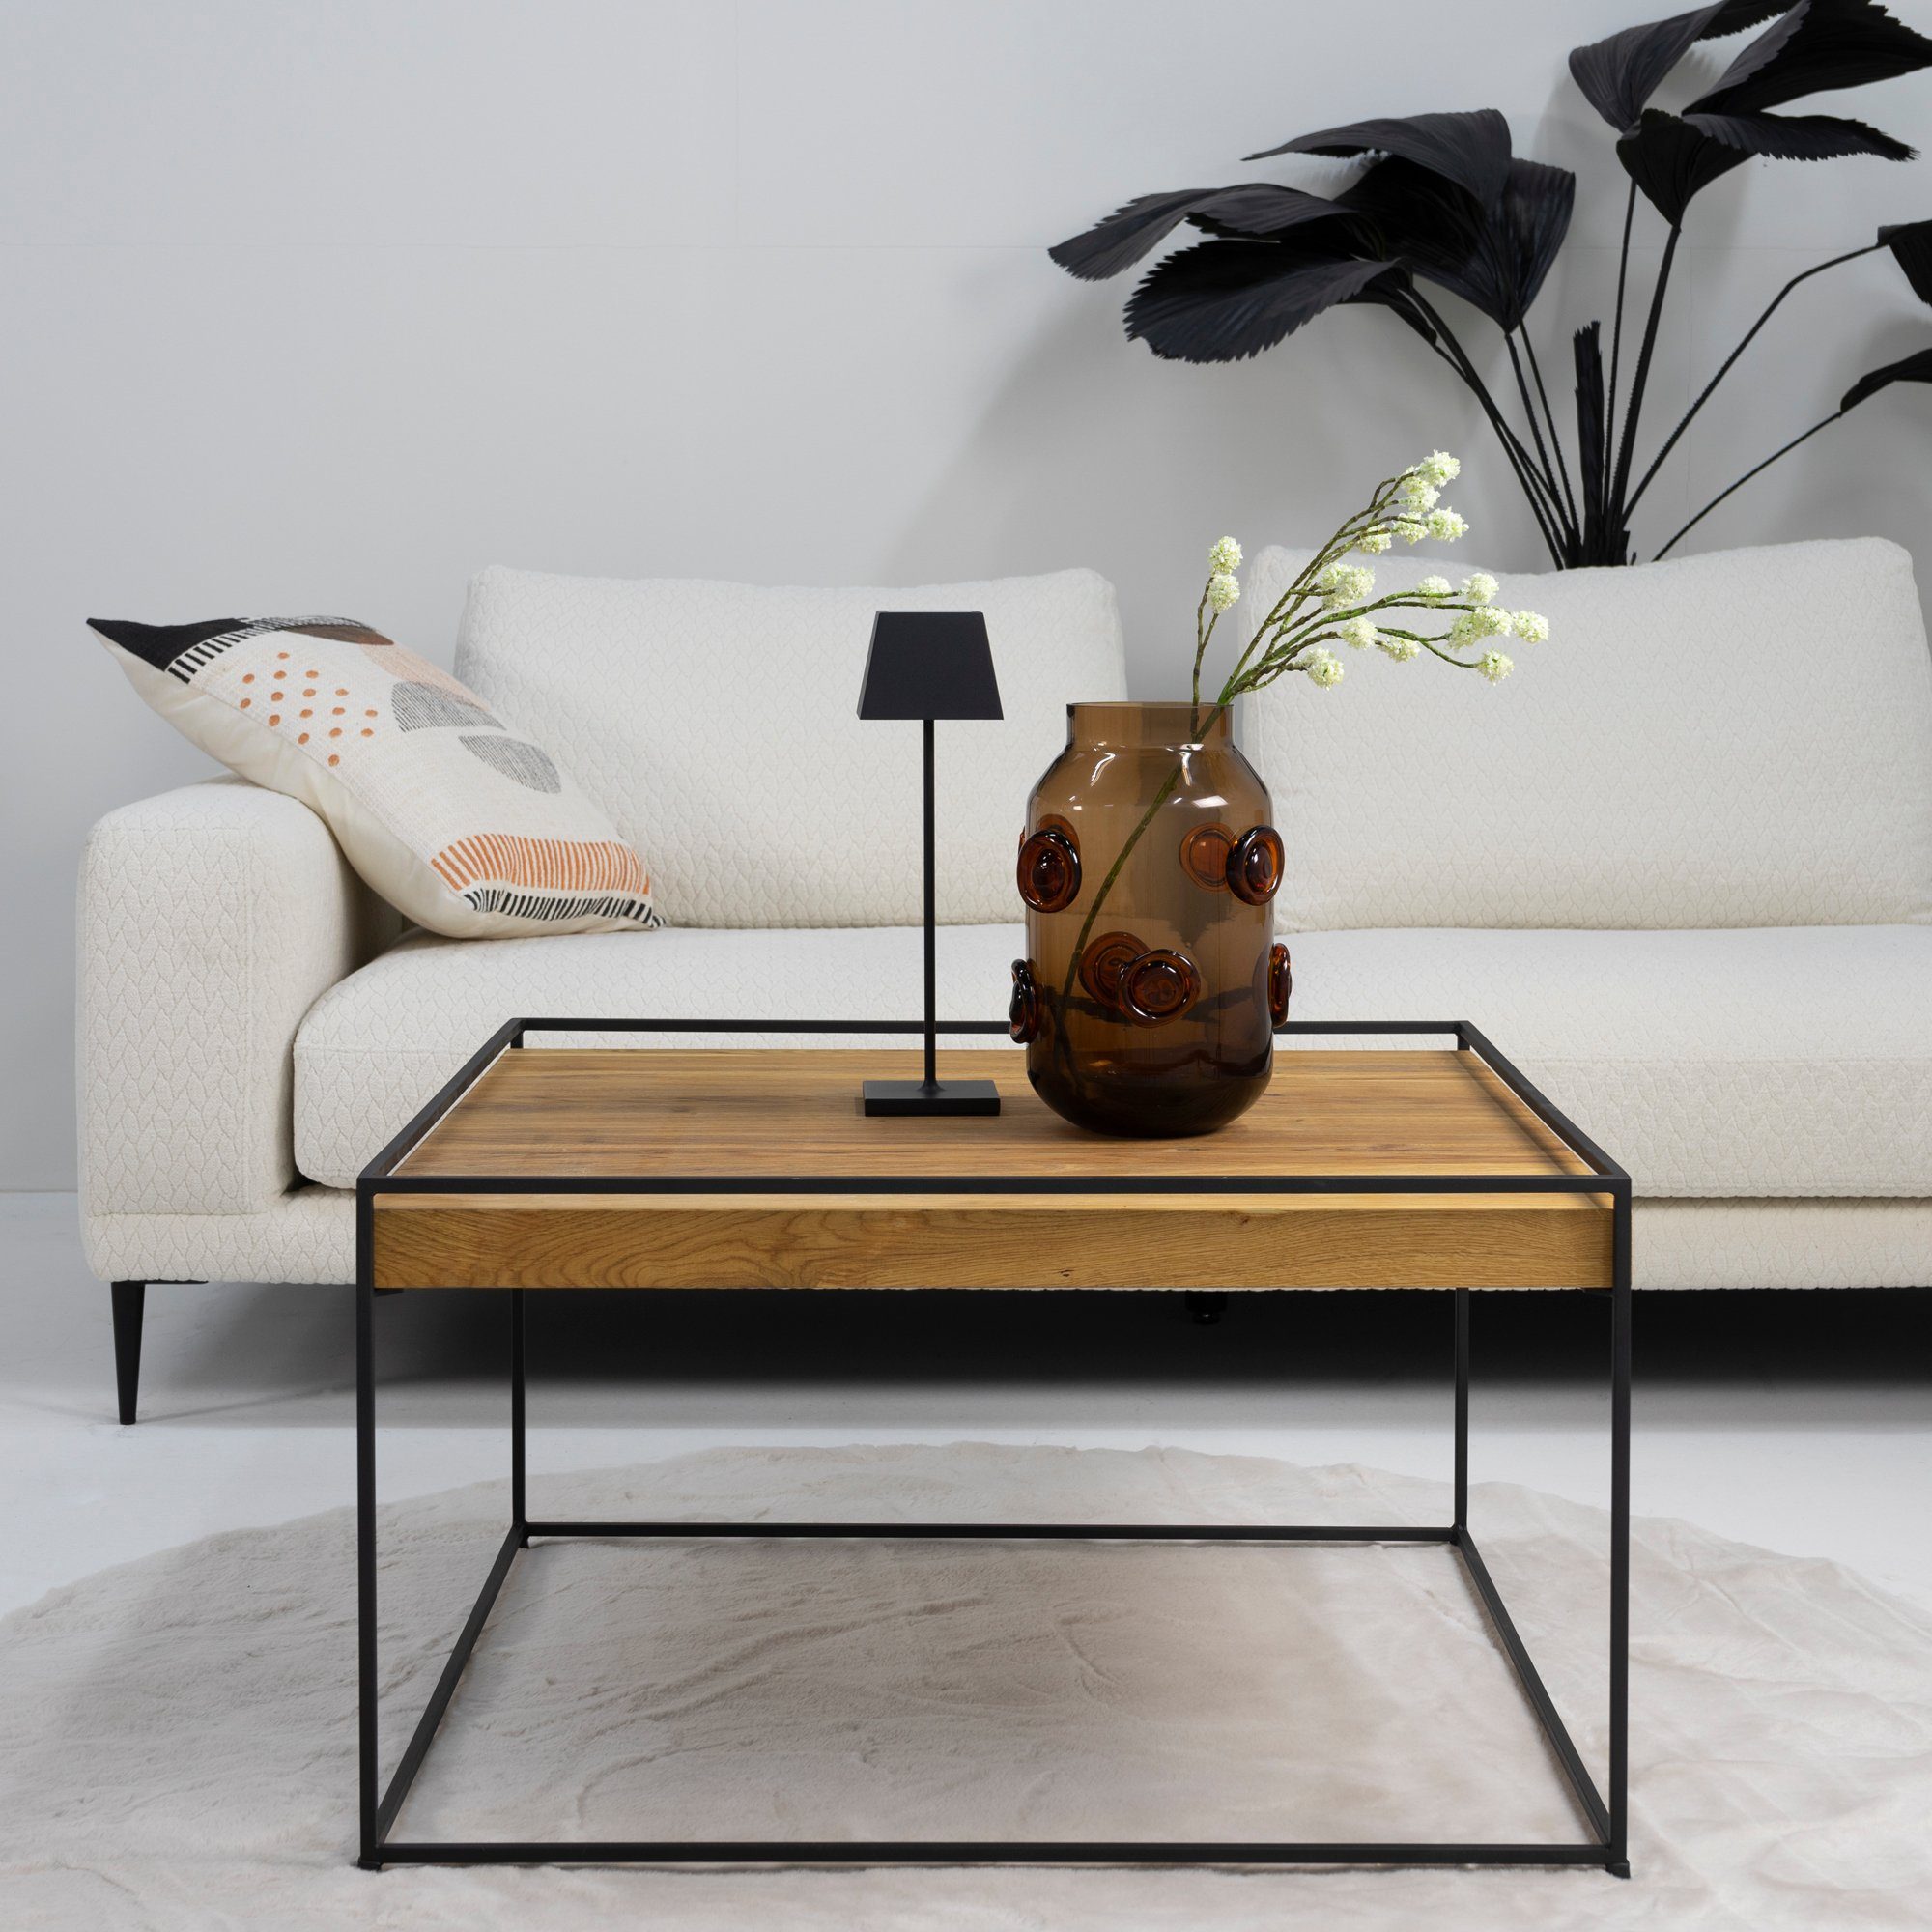 Torna Design - Beistelltisch Schwarz Furniture Torna WOOD 80 THIN 80x46x80cm Beistelltisch